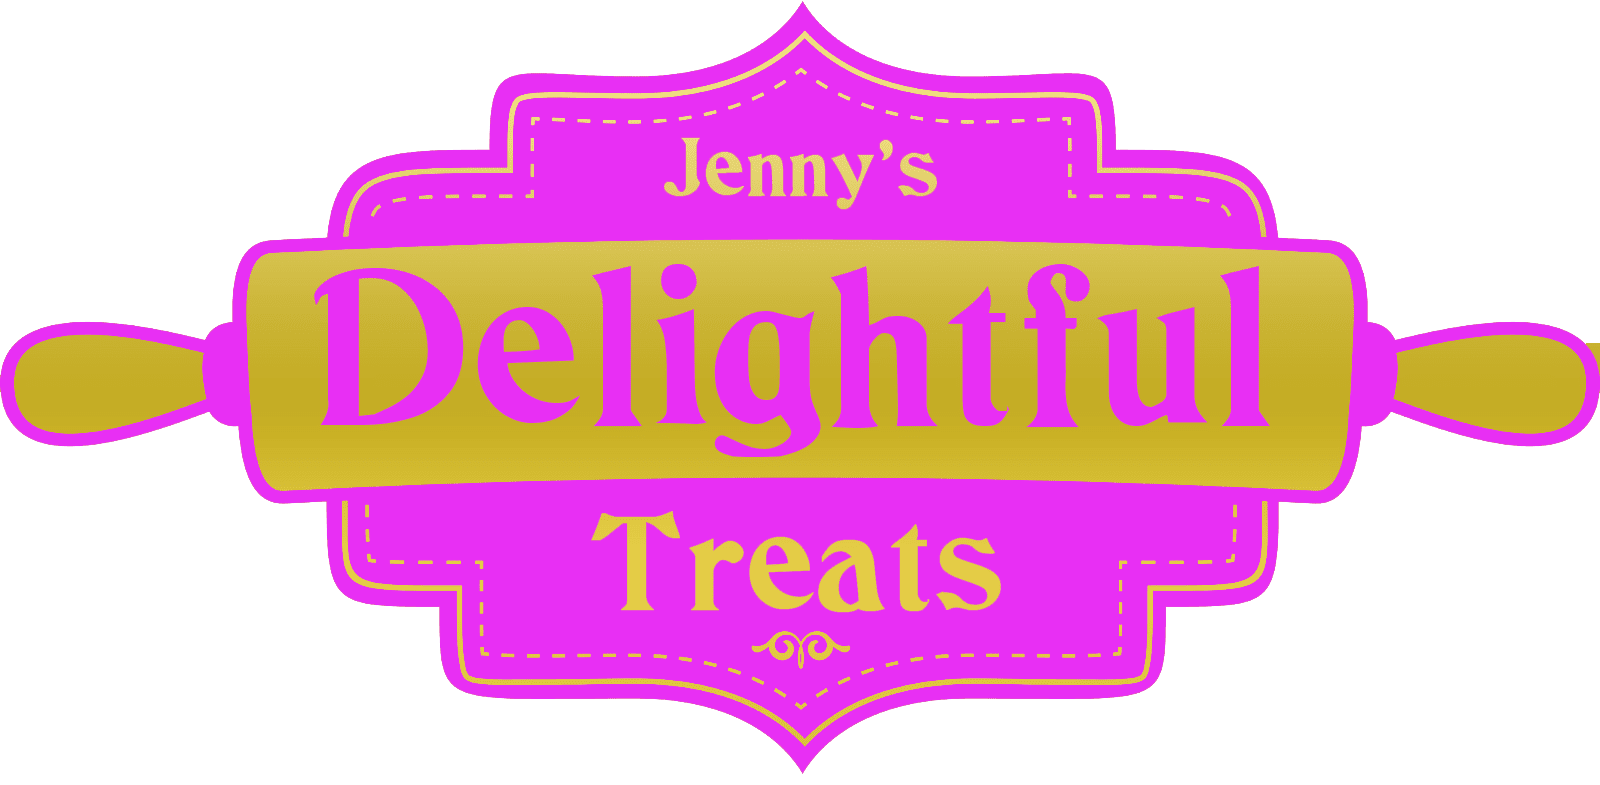 Jenny's Delightful Treats